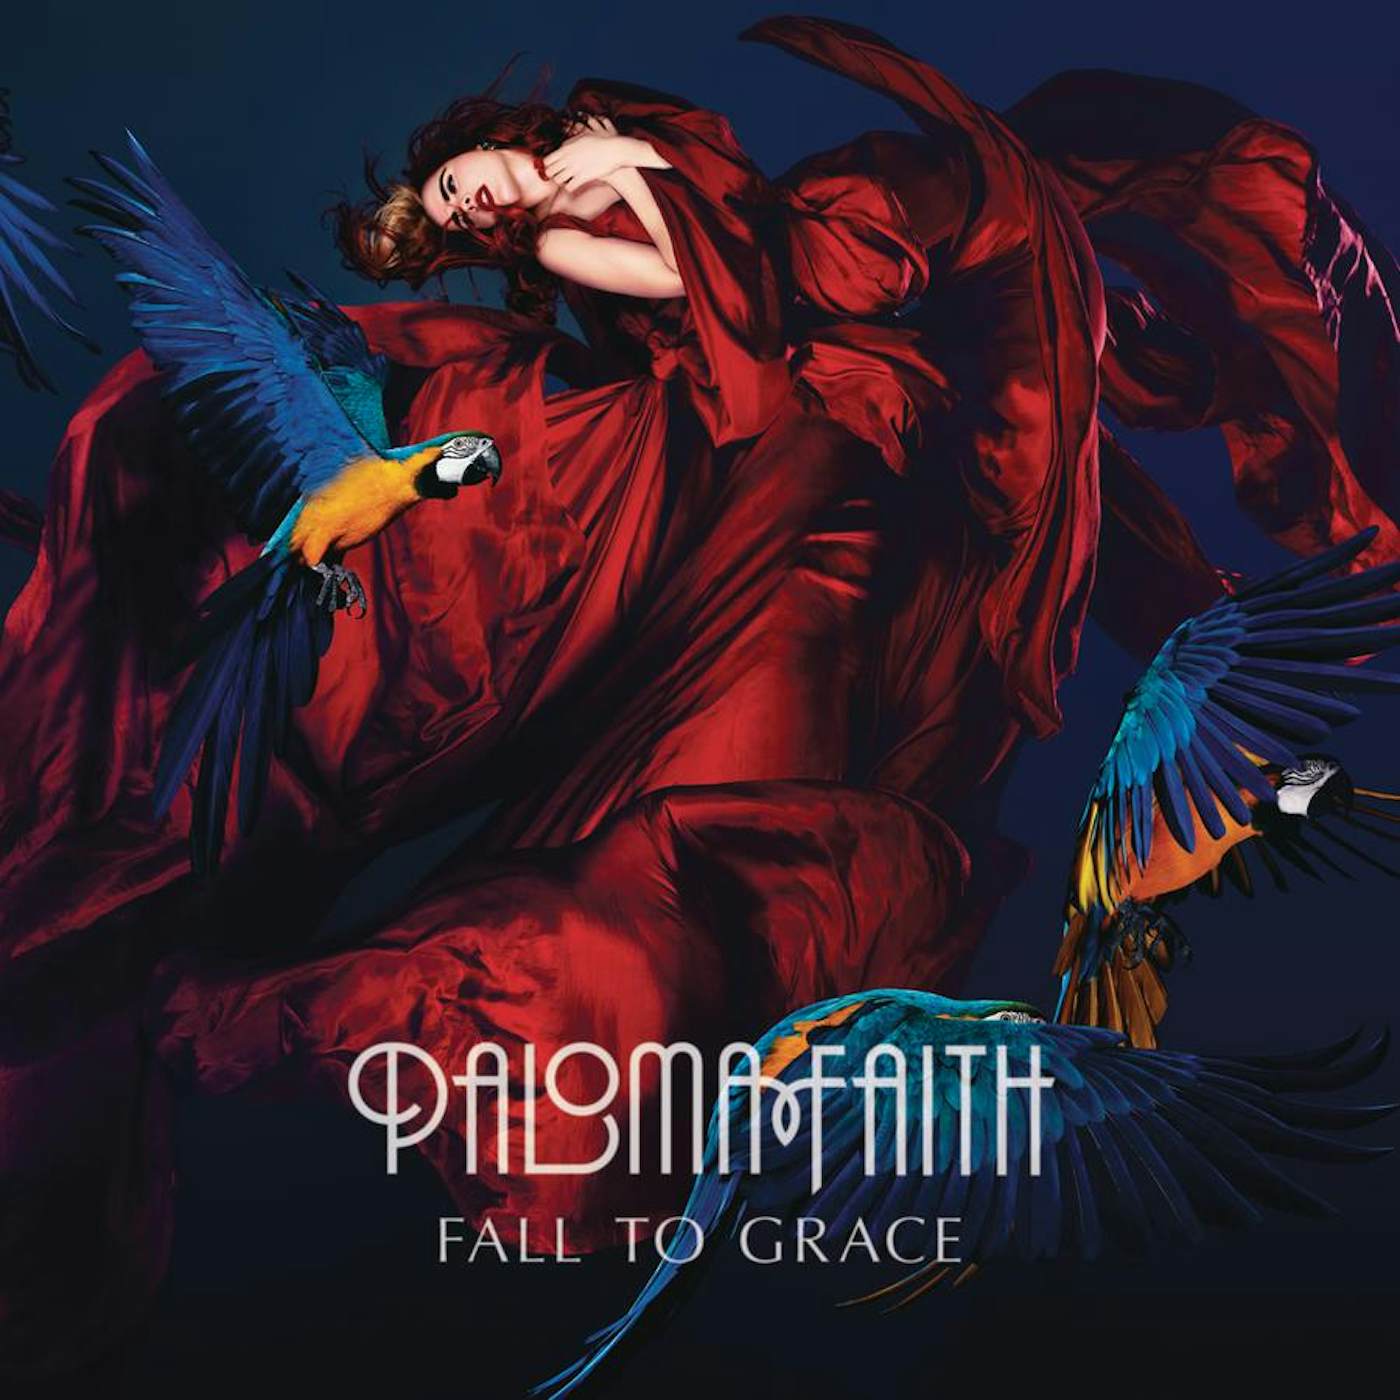 Paloma Faith FALL TO GRACE CD